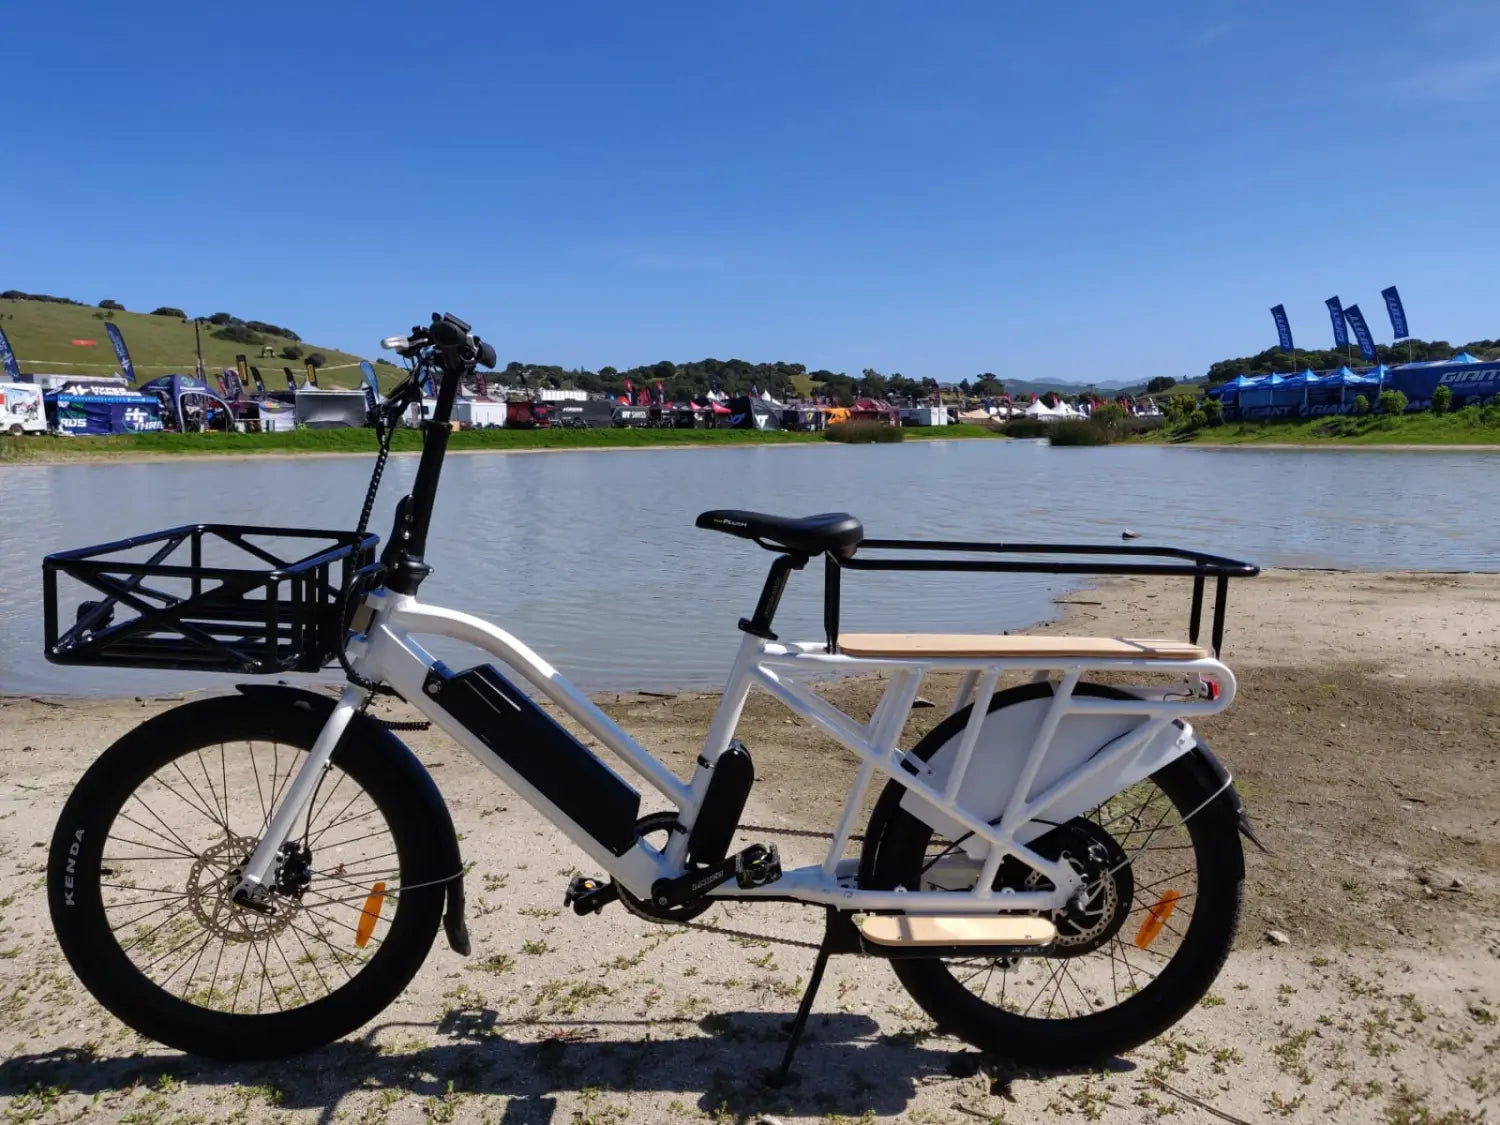 Eunorau Max-Cargo 2.0 Electric Bike